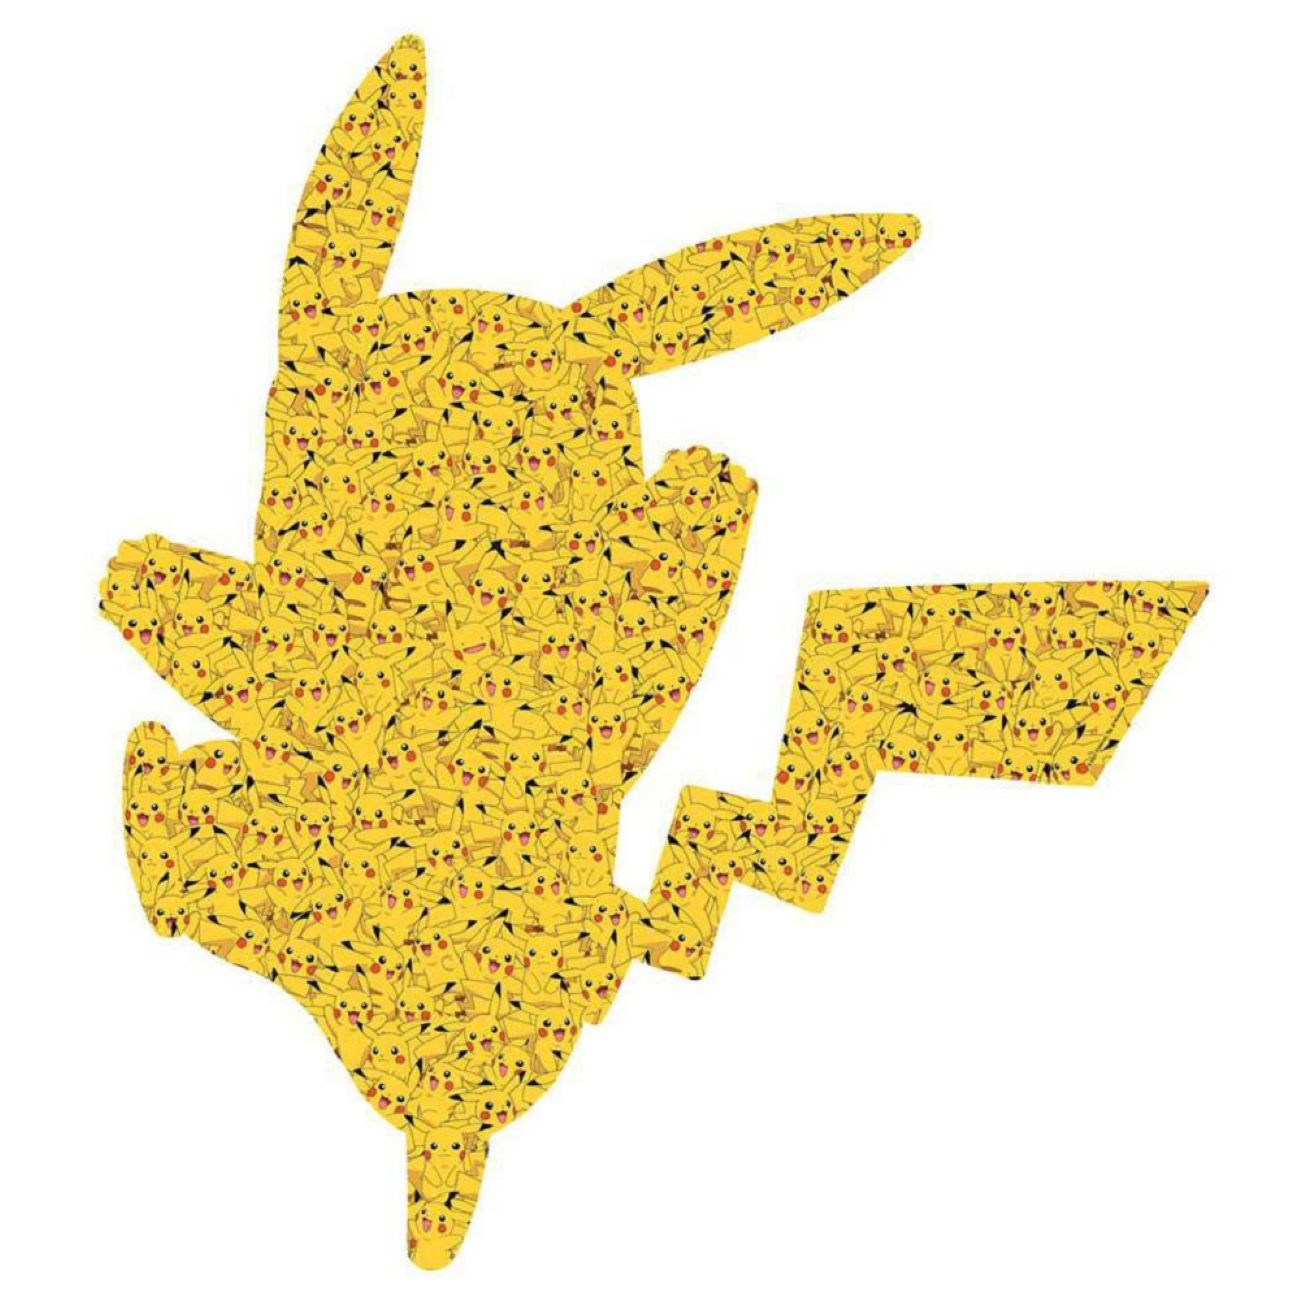 Pikachu Teile) Pokémon RAVENSBURGER Puzzle (727